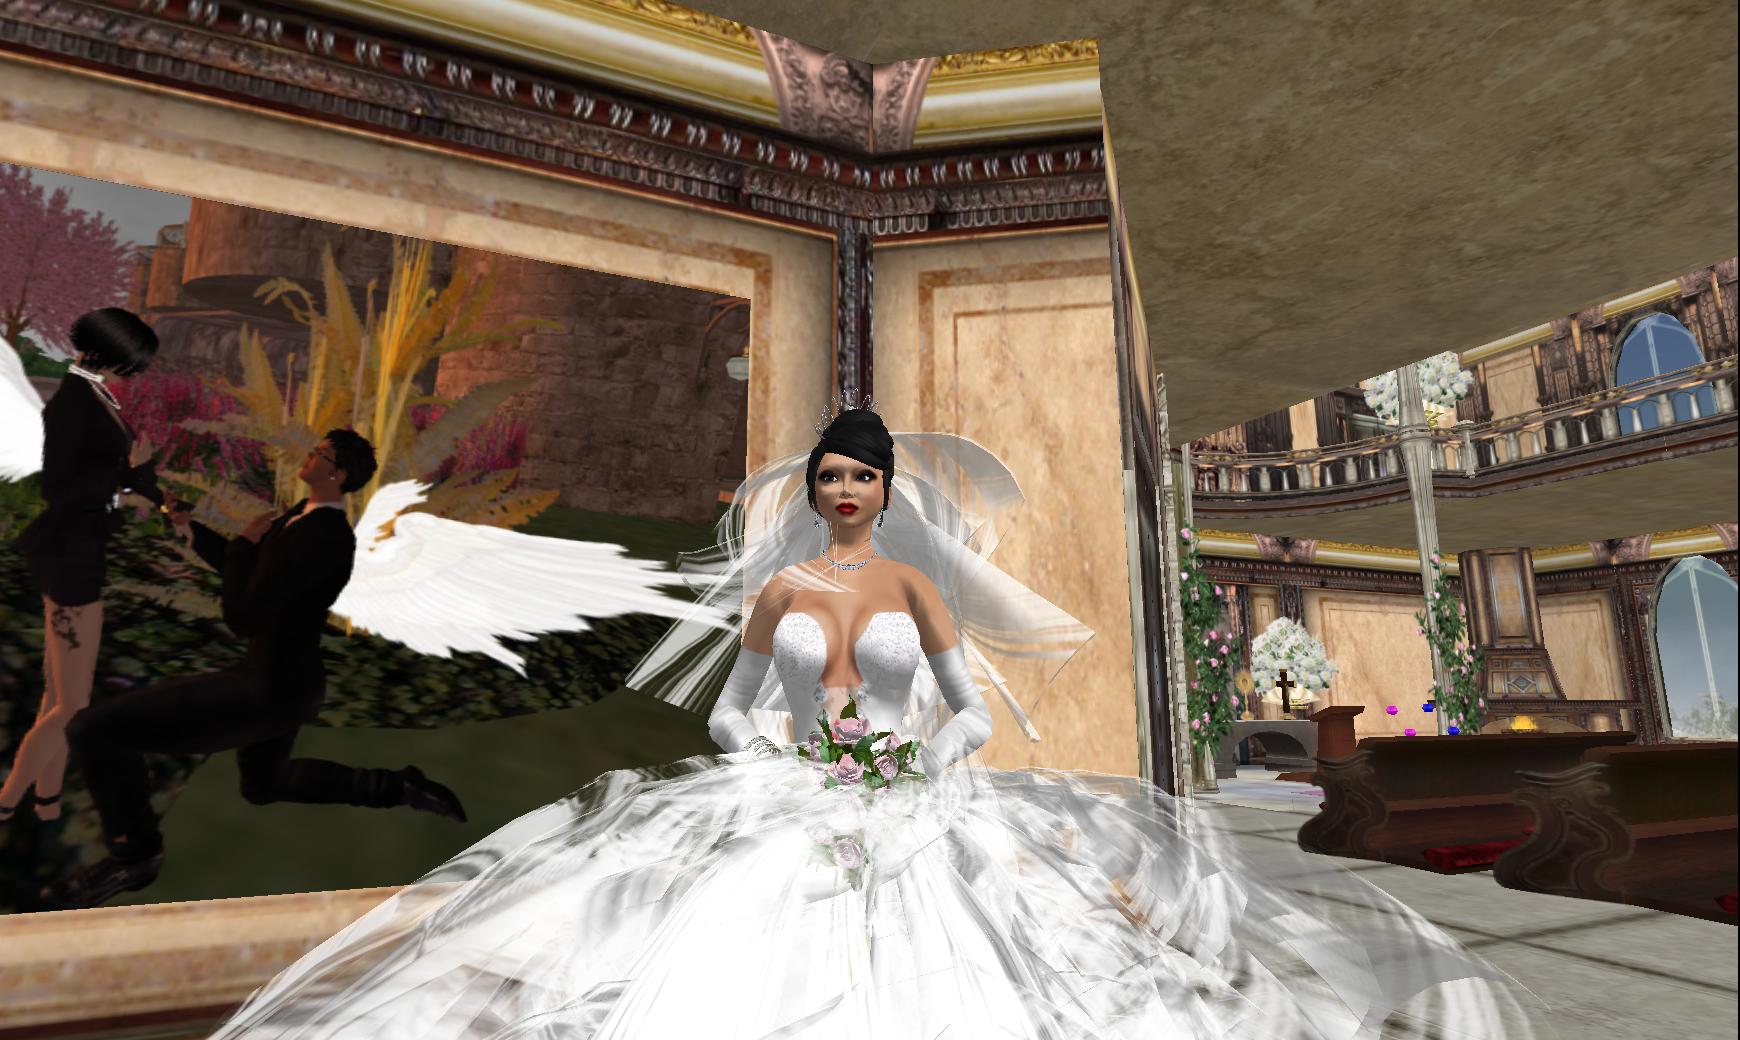 online wedding dress galleries